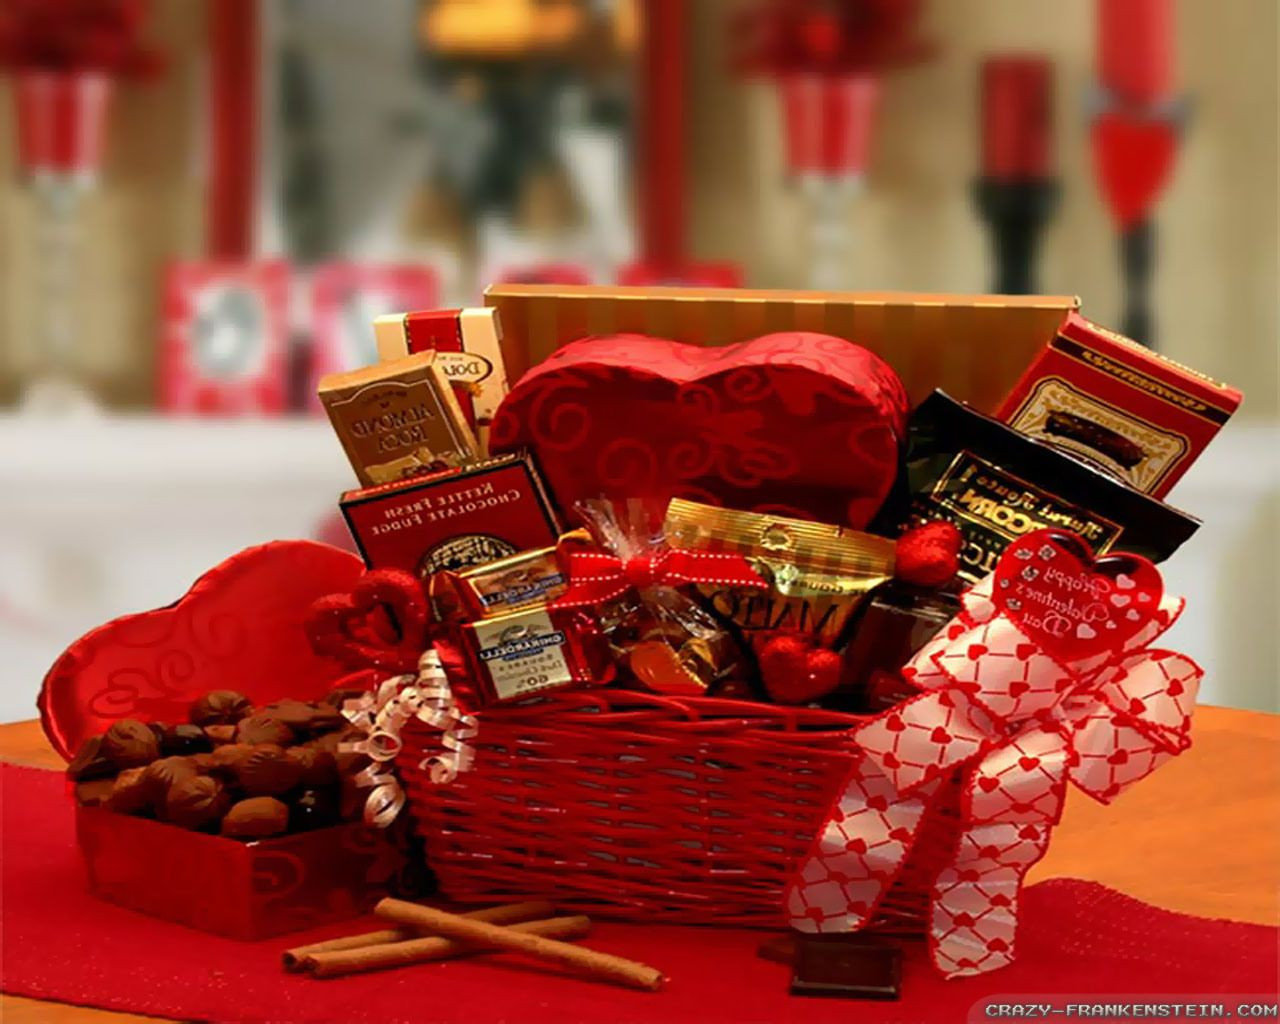 New Boyfriend Valentines Day Gift Ideas
 Ideas What To Get My Boyfriend For Valentines Day